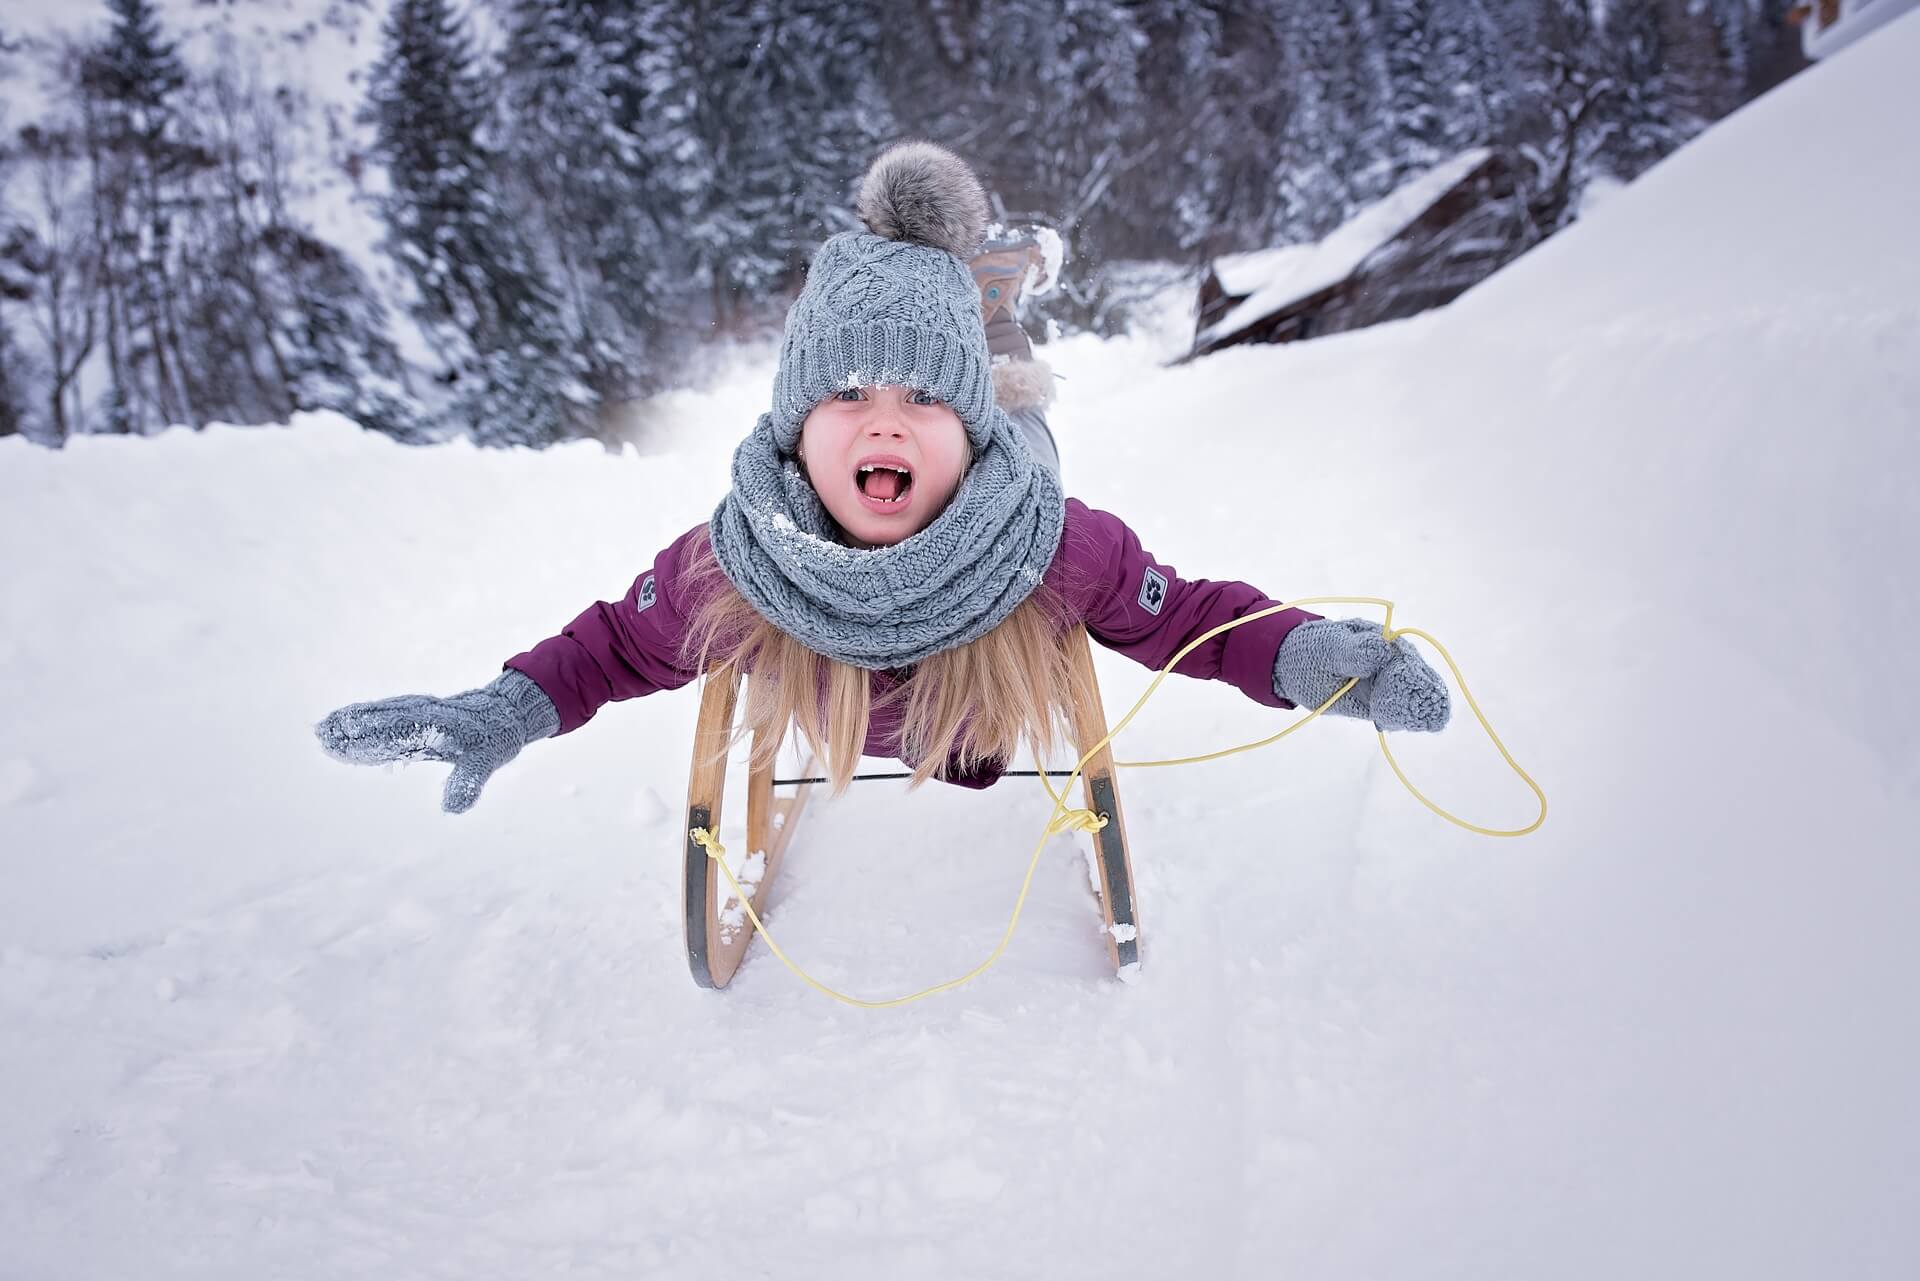 Sanjkanje skijanje zimske radosti sportovi